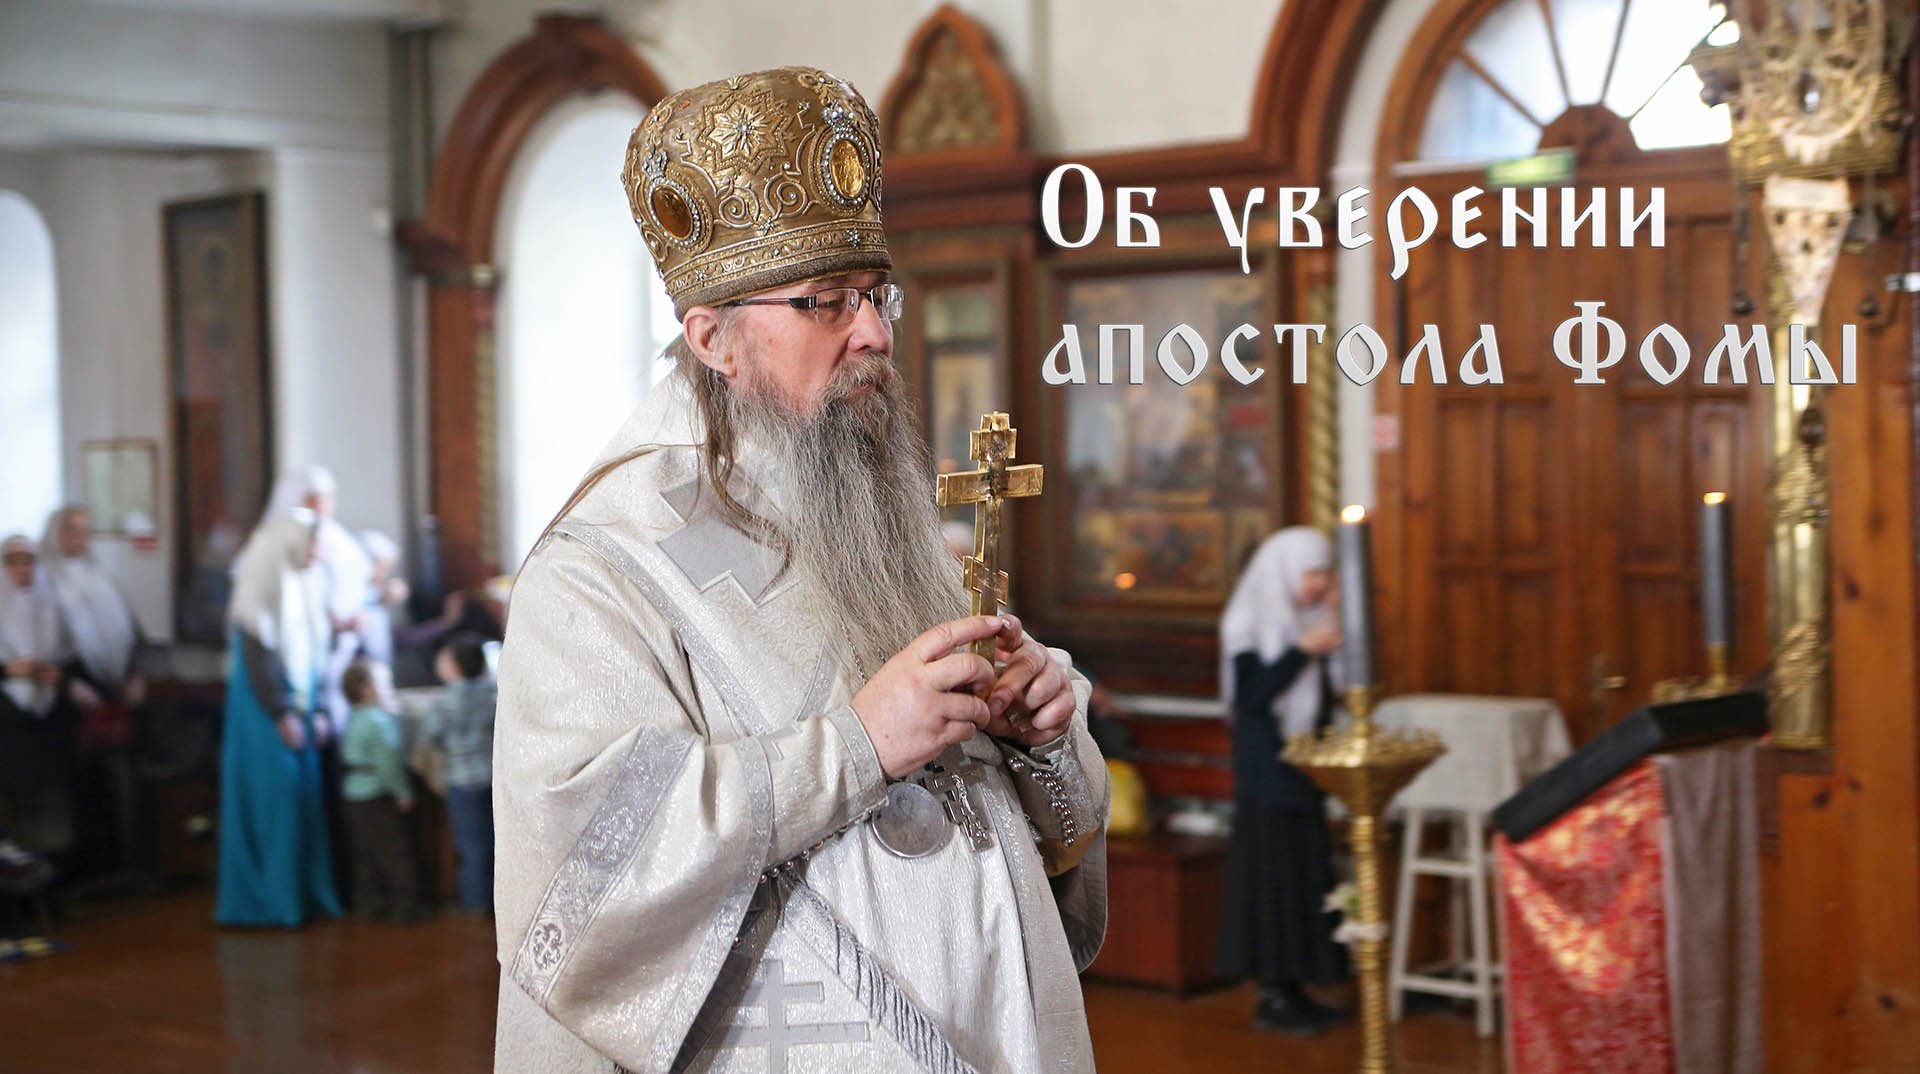 Пасхальная проповедь епископа Савы (Чаловского) в Новосибирске. Фомина Неделя